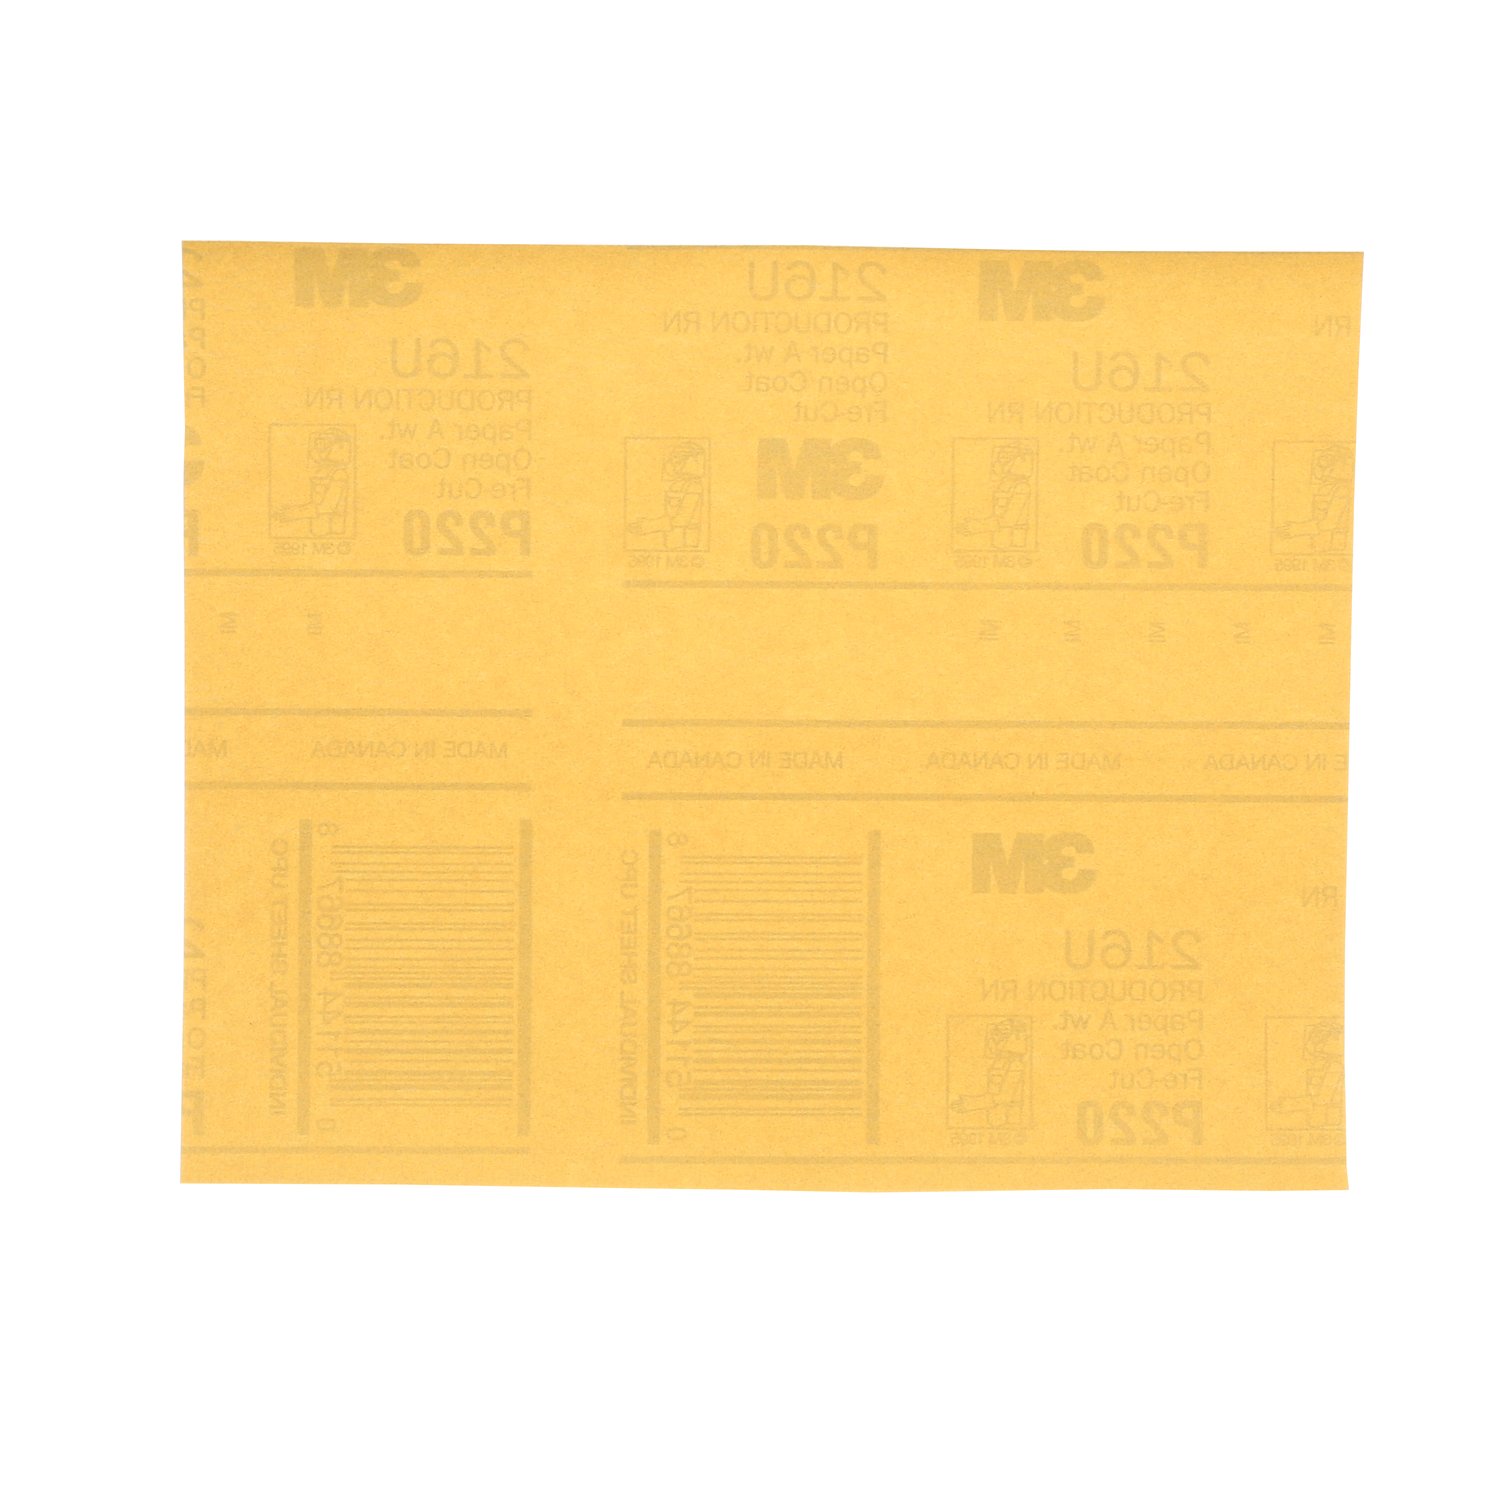 7000118283 - 3M Gold Abrasive Sheet, 02544, P220 grade, 9 in x 11 in, 50 sheets per
pack, 5 packs per case